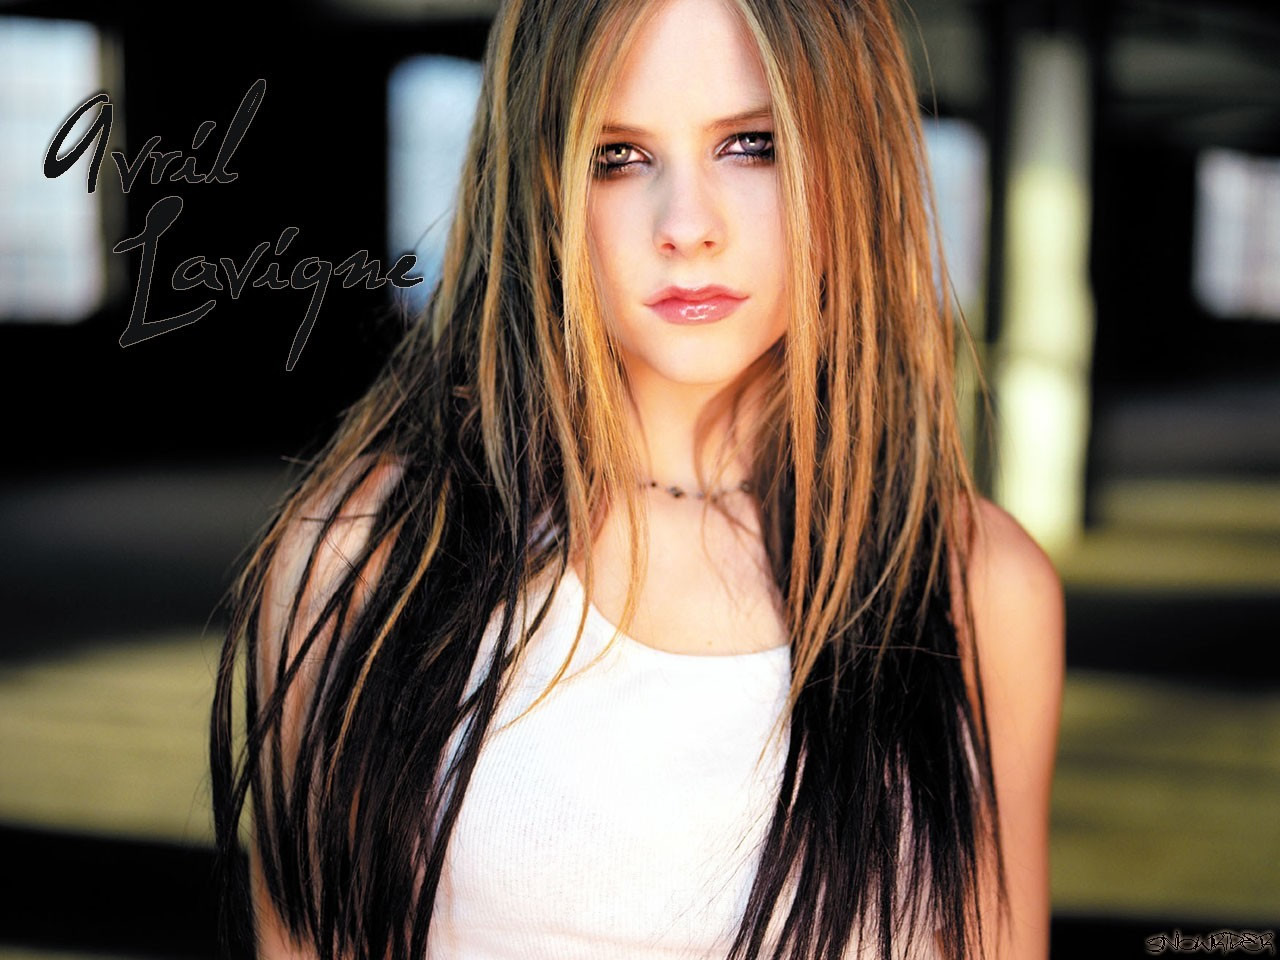 Fond d'ecran Avril Lavigne de face